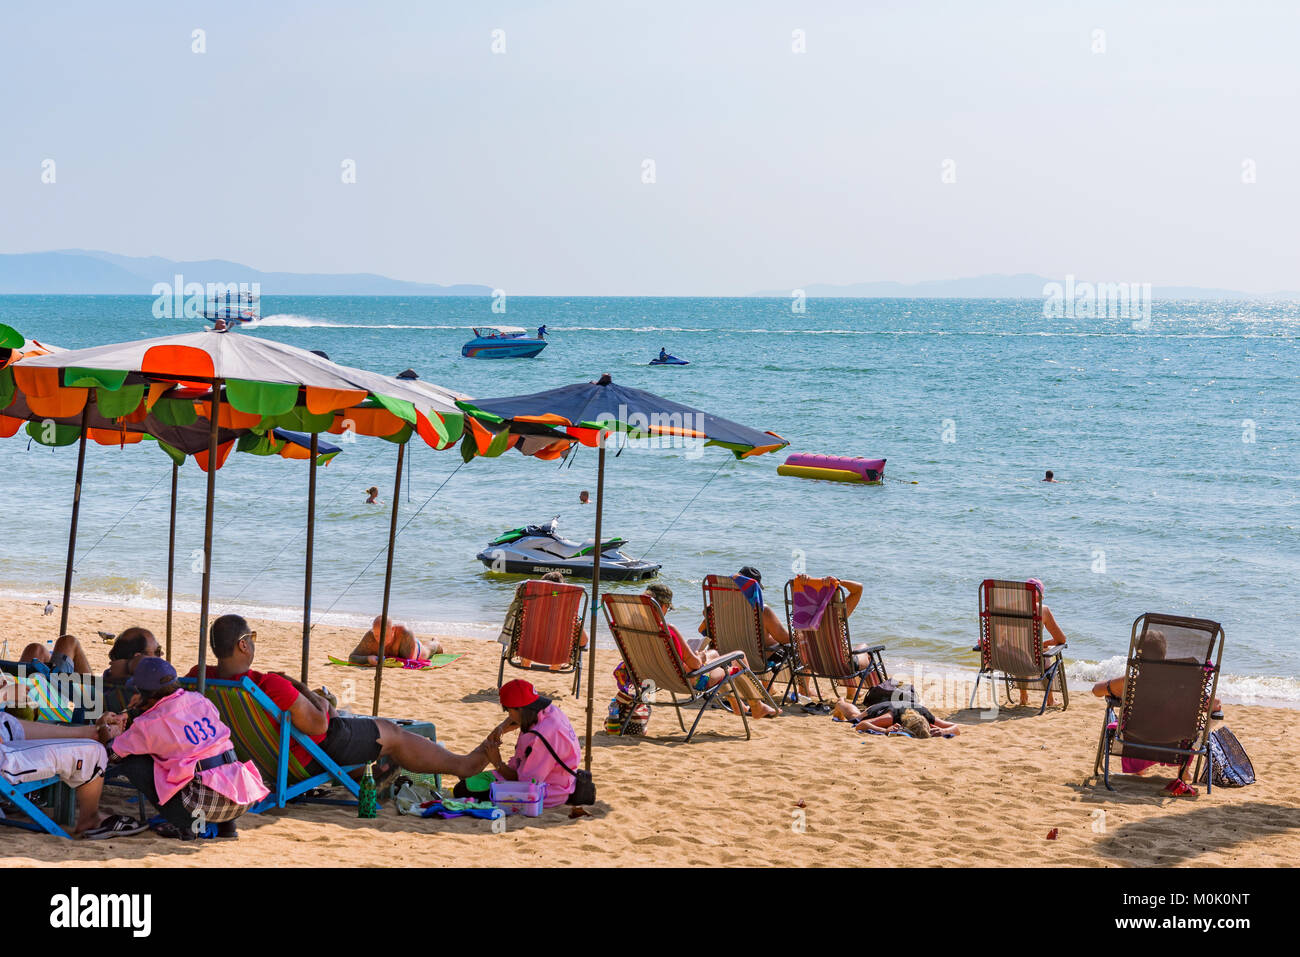 PATTAYA, Thailandia - gennaio 24: si tratta di Jomtien Beach, una spiaggia molto popolare per i turisti e la gente del posto su gennaio 24, 2017 in Pattaya Foto Stock